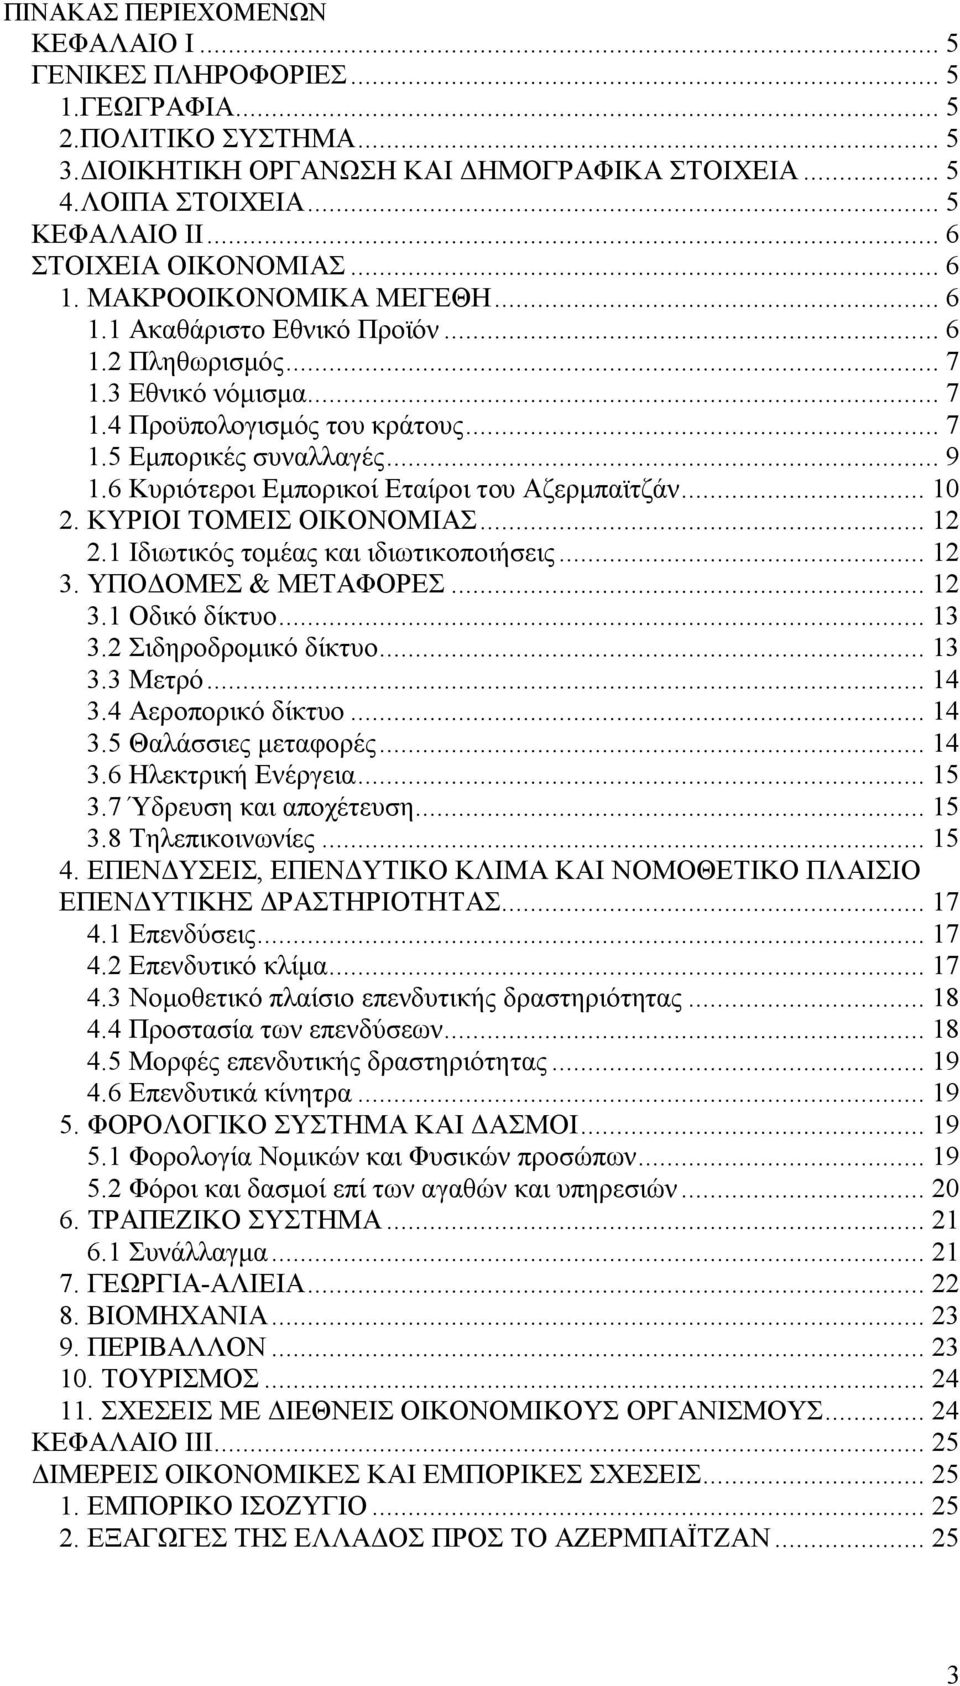 .. 9 1.6 Κυριότεροι Εμπορικοί Εταίροι του Αζερμπαϊτζάν... 10 2. ΚΥΡΙΟΙ ΤΟΜΕΙΣ ΟΙΚΟΝΟΜΙΑΣ... 12 2.1 Ιδιωτικός τομέας και ιδιωτικοποιήσεις... 12 3. ΥΠΟΔΟΜΕΣ & ΜΕΤΑΦΟΡΕΣ... 12 3.1 Οδικό δίκτυο... 13 3.